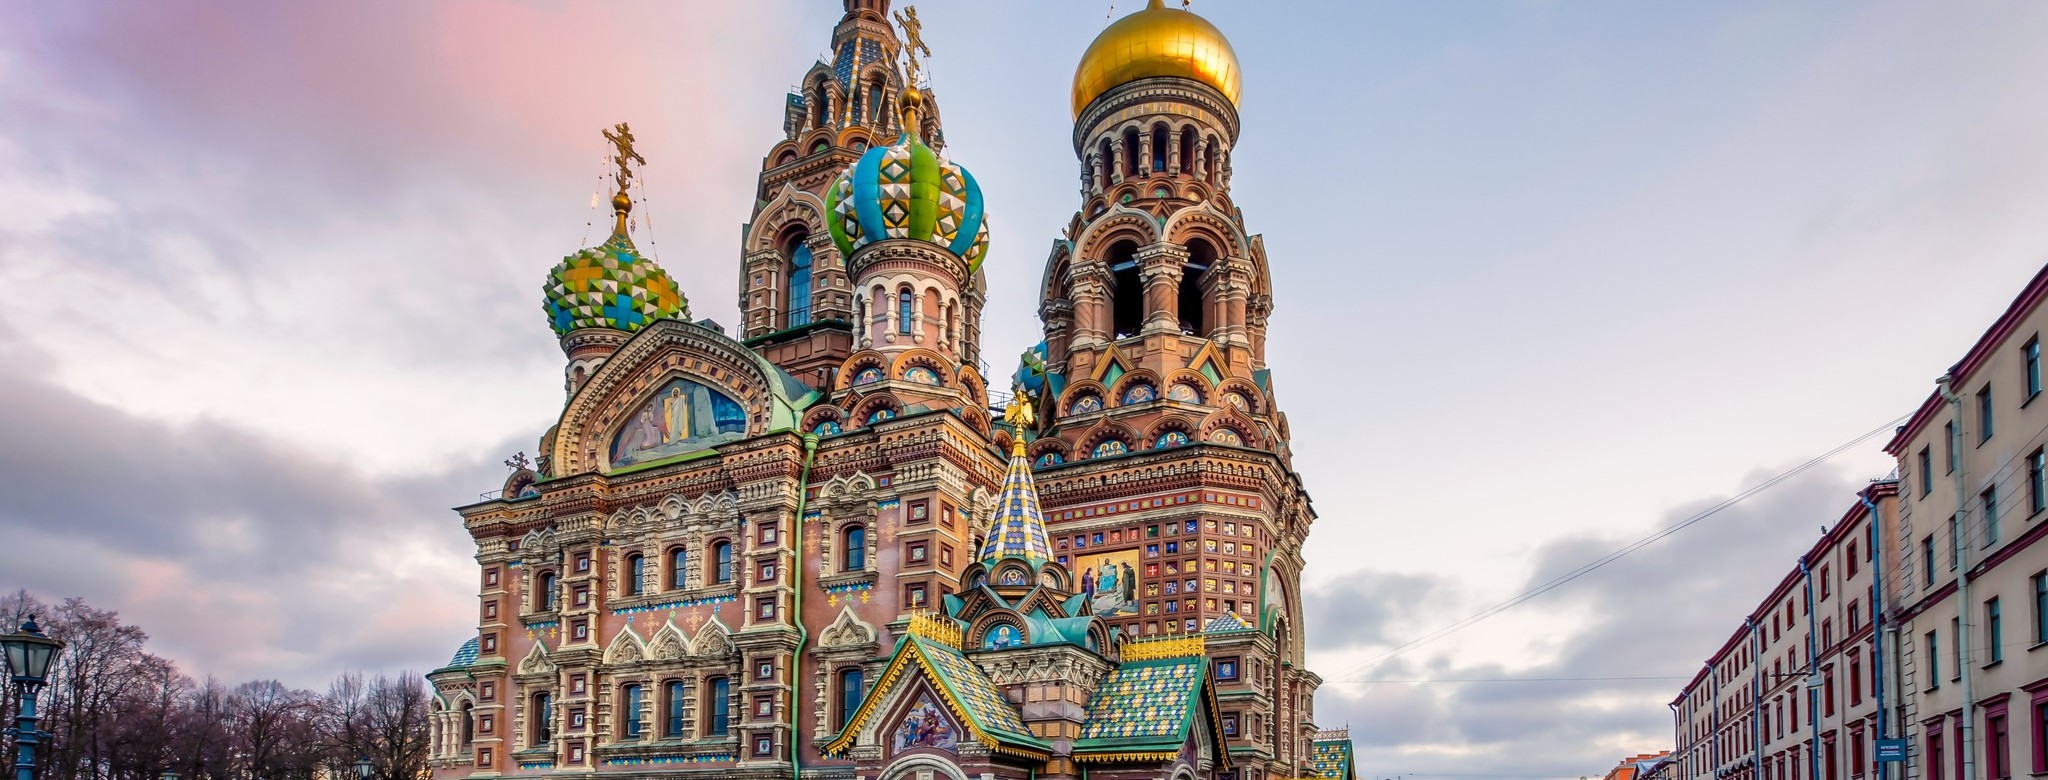 St-Petersburg.